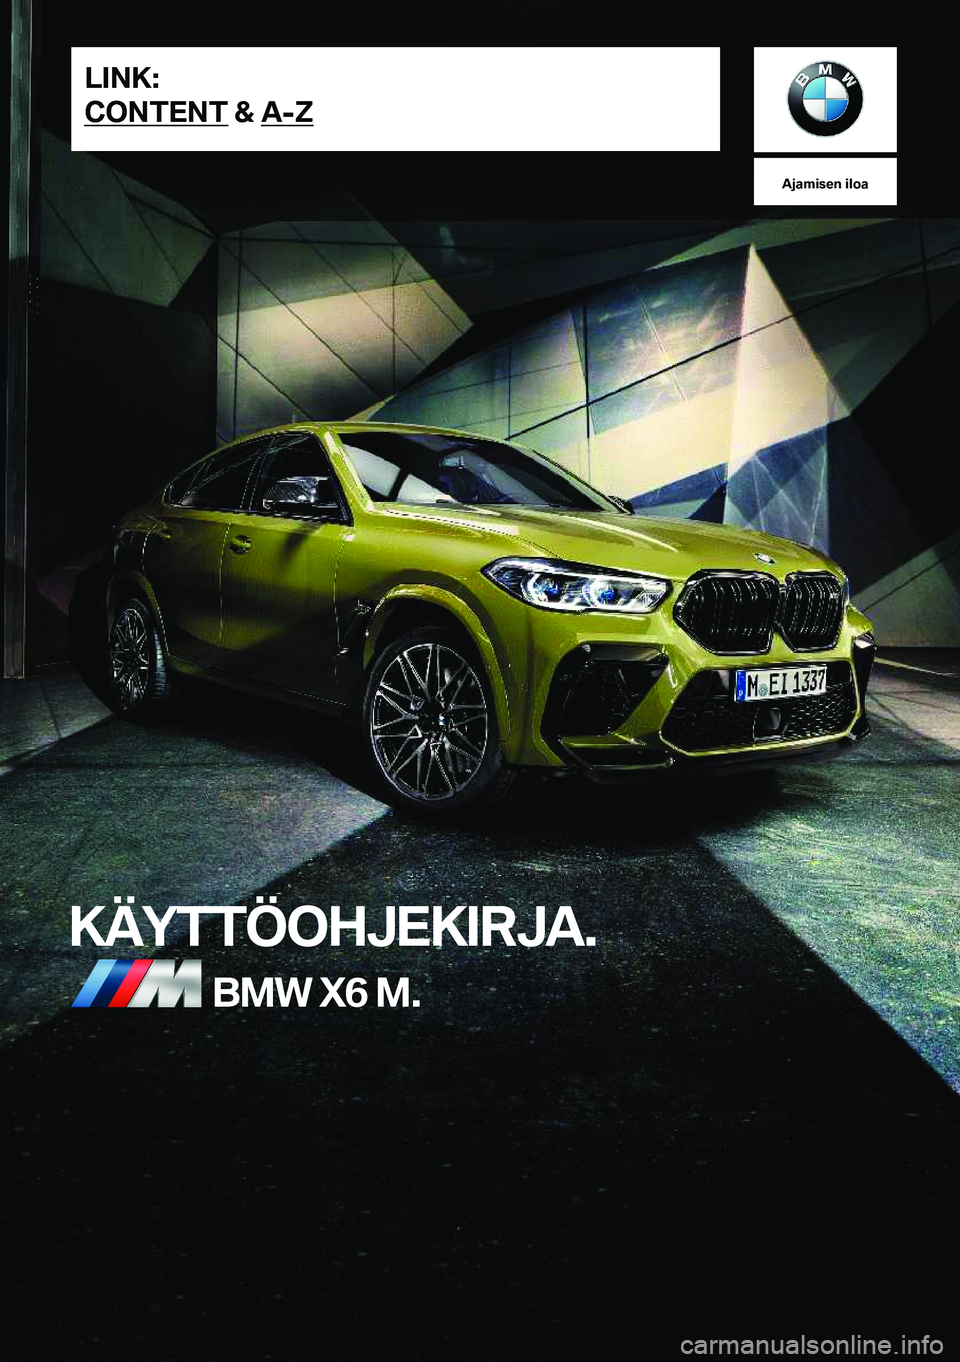 BMW X6 M 2020  Omistajan Käsikirja (in Finnish) �A�j�a�m�i�s�e�n��i�l�o�a
�K�